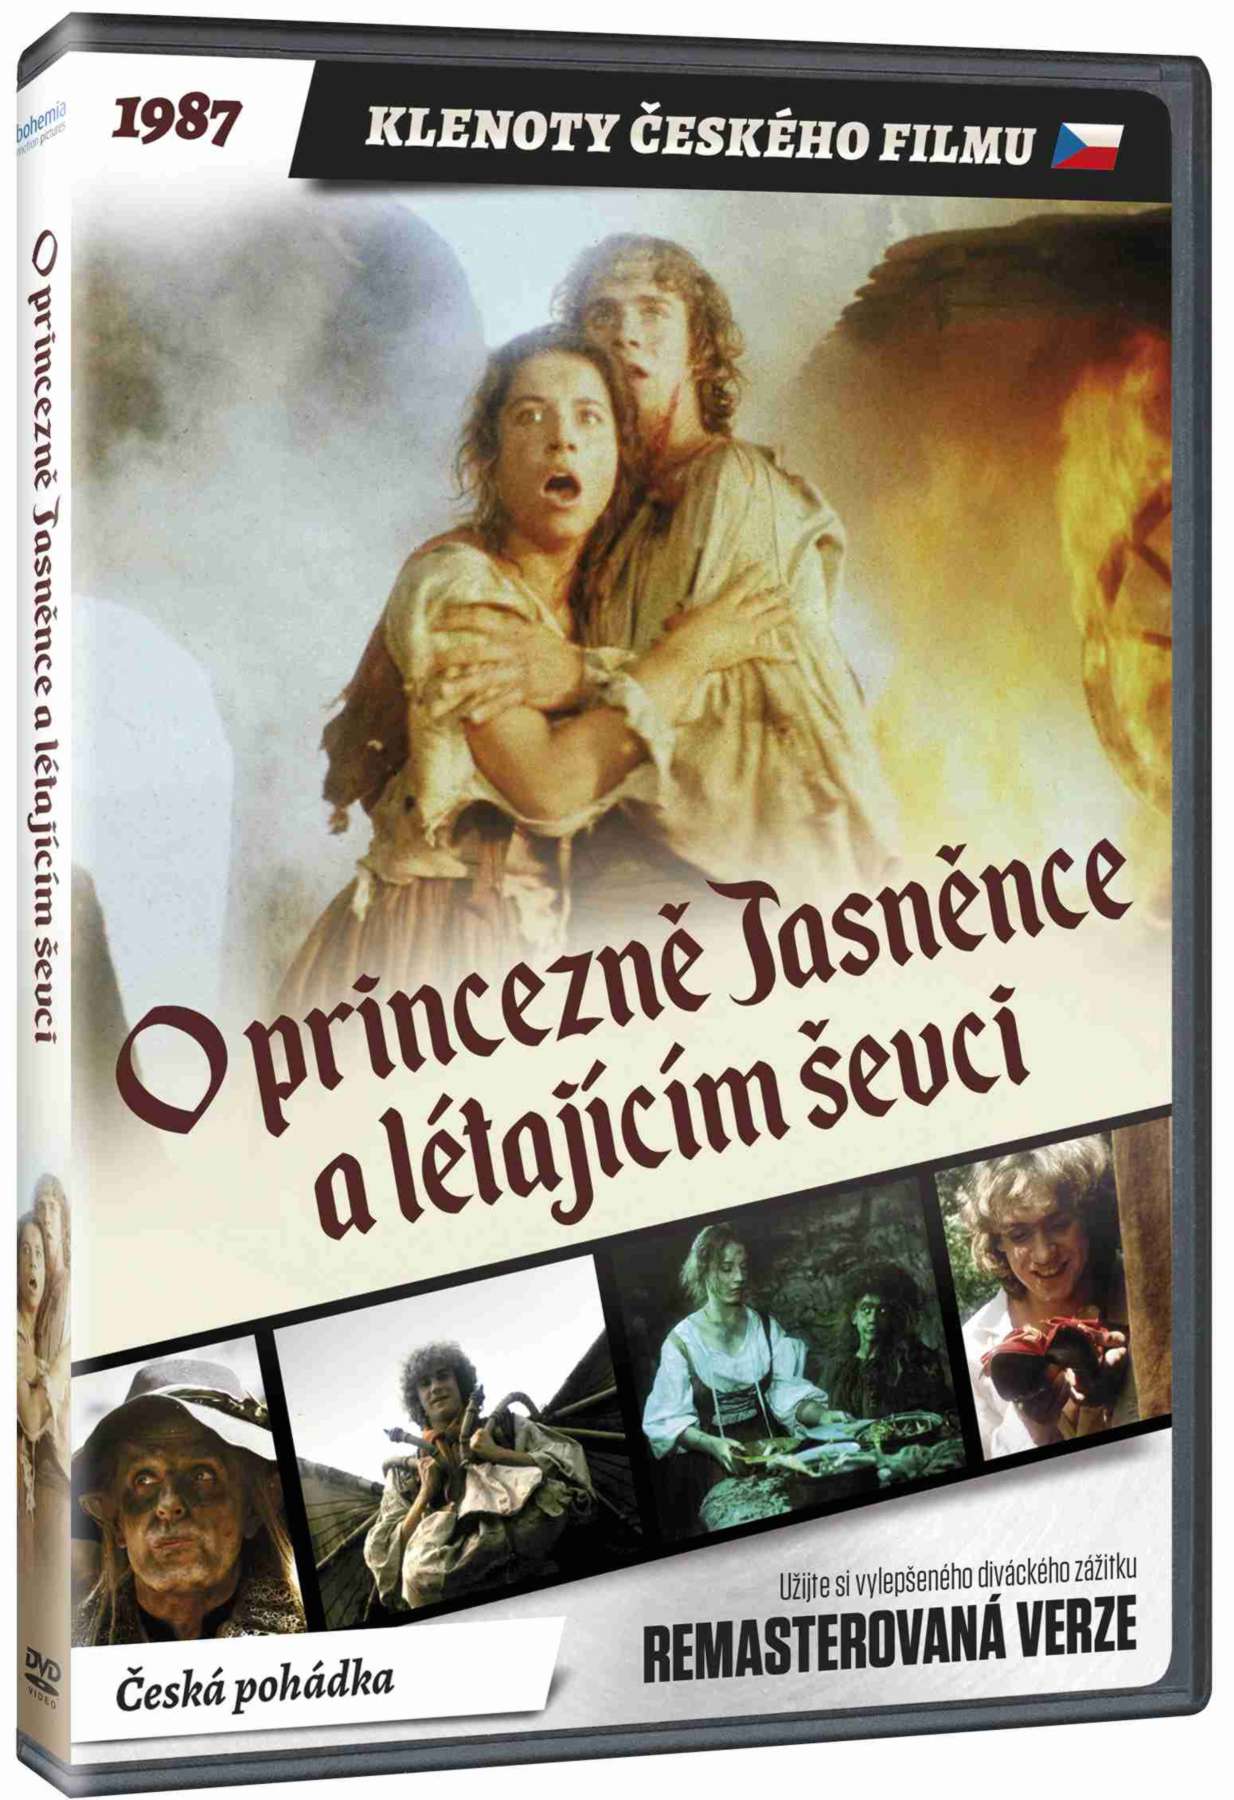 O princezně Jasněnce a létajícím ševci - DVD (remasterovaná verze)